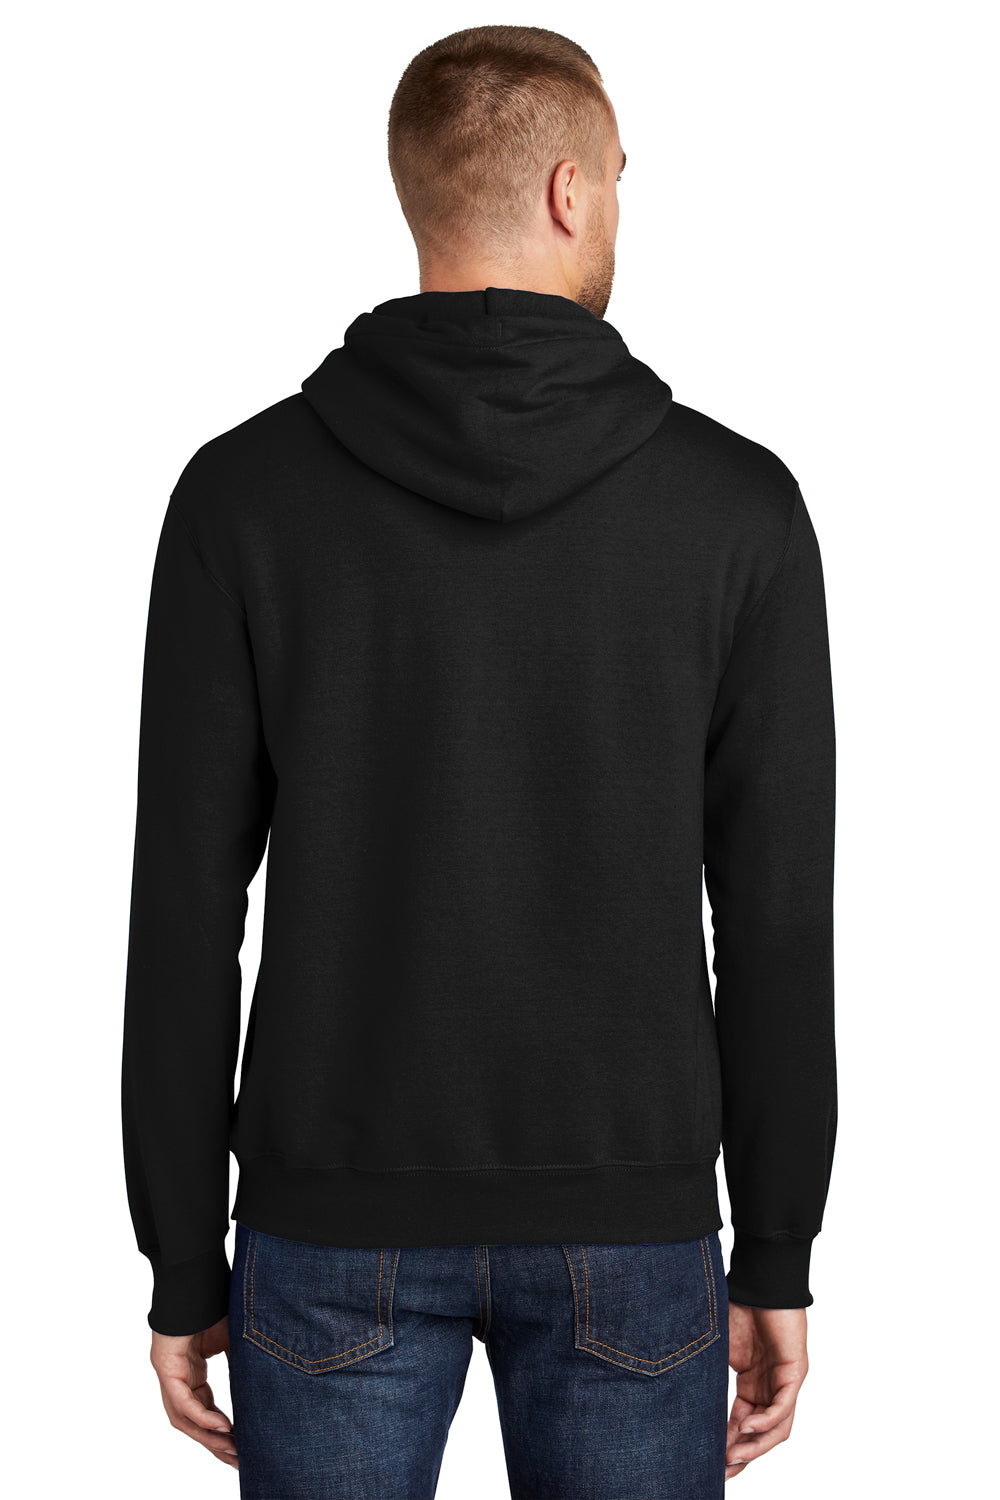 Port & Company PC90H Mens Essential Fleece Hooded Sweatshirt Hoodie Black Side